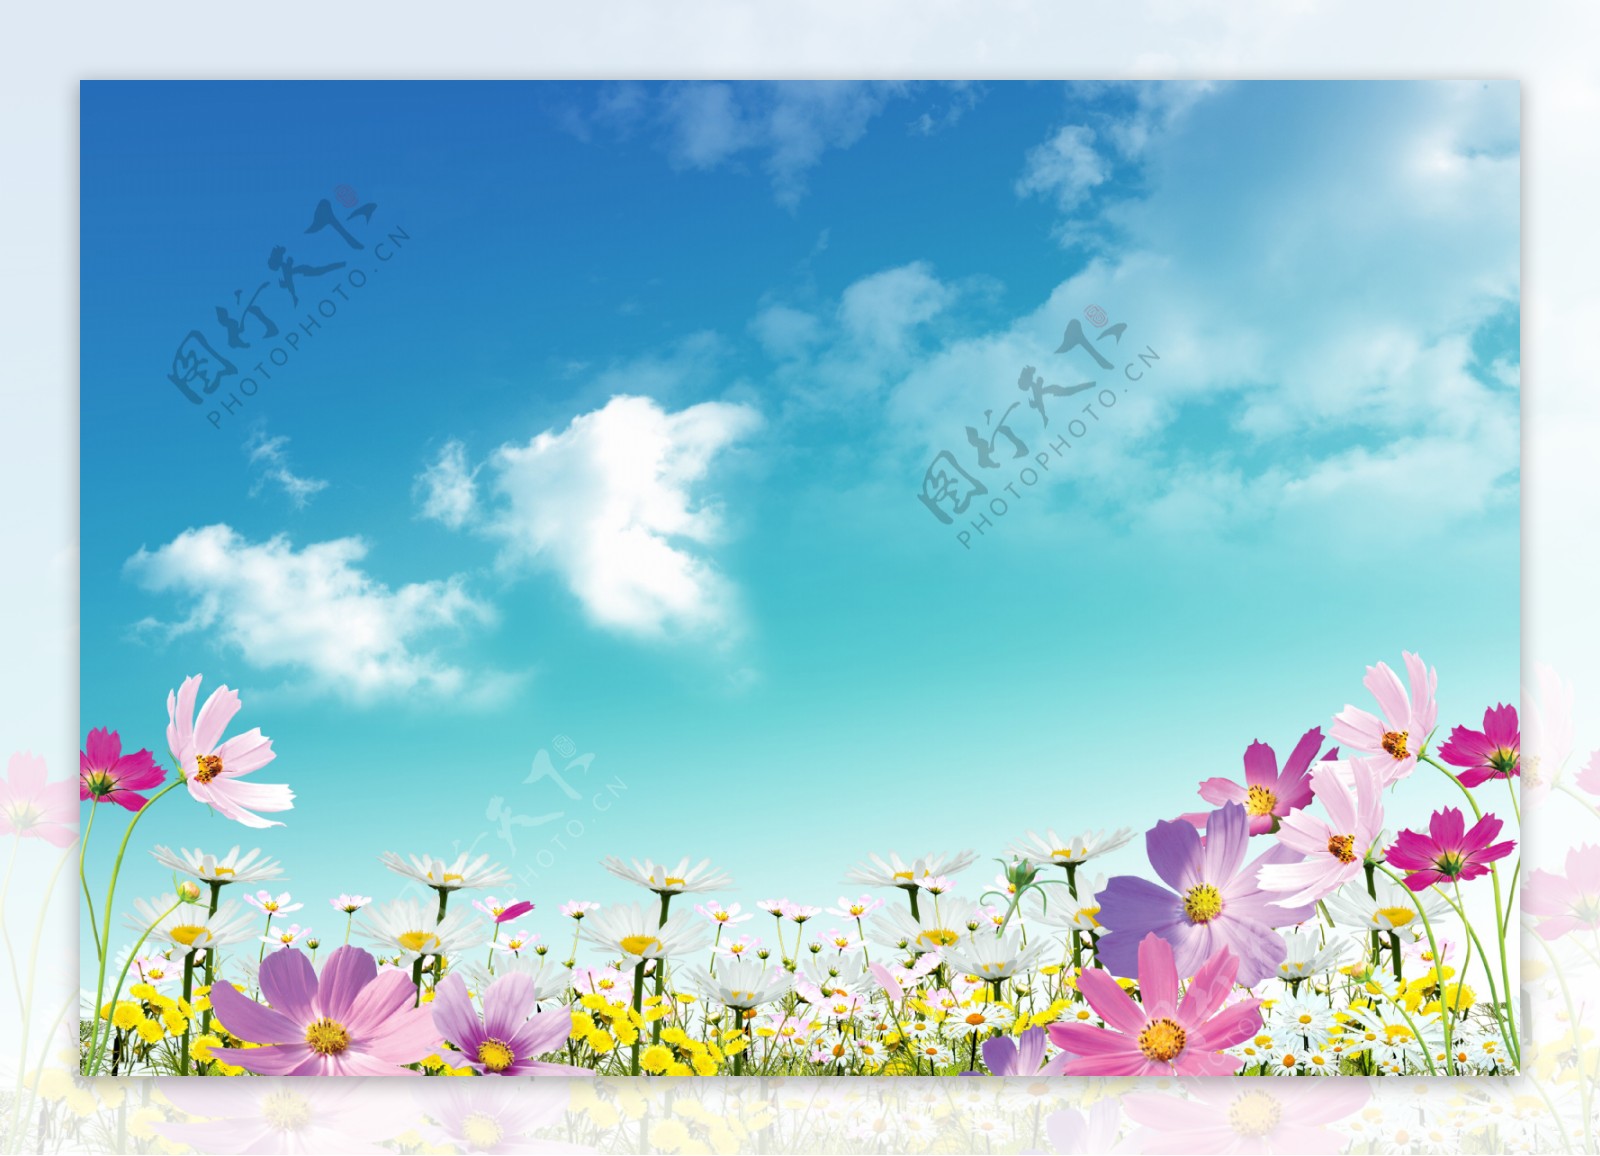 高清时尚蓝天鲜花背景设计素材摸板